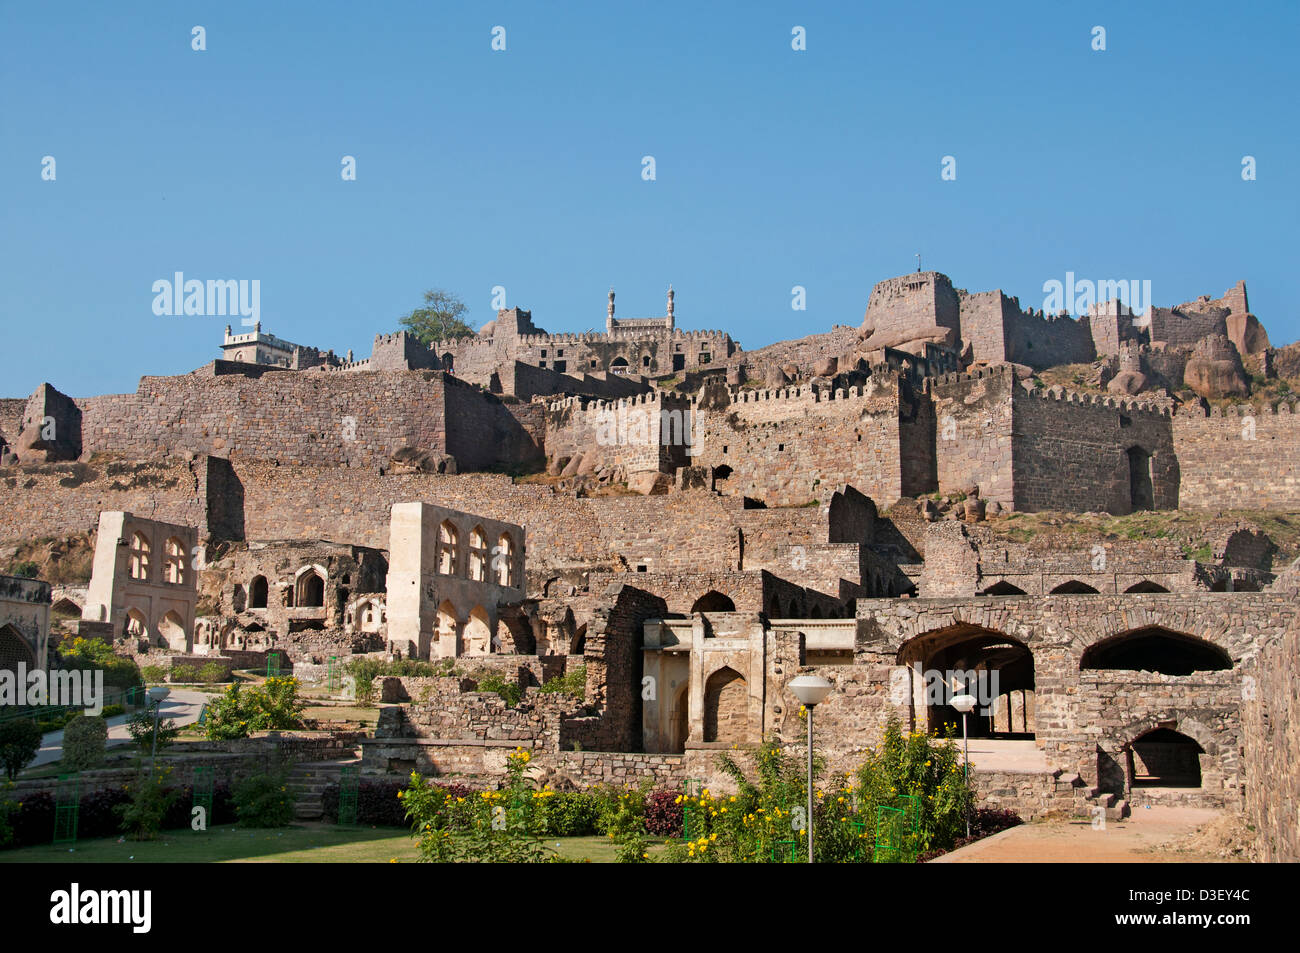 Golkonda Fort ruiniert Hauptstadt des alten Königreichs von Golkonda 1518 – 1687 Hyderabad Indien Andhra Pradesh Stockfoto